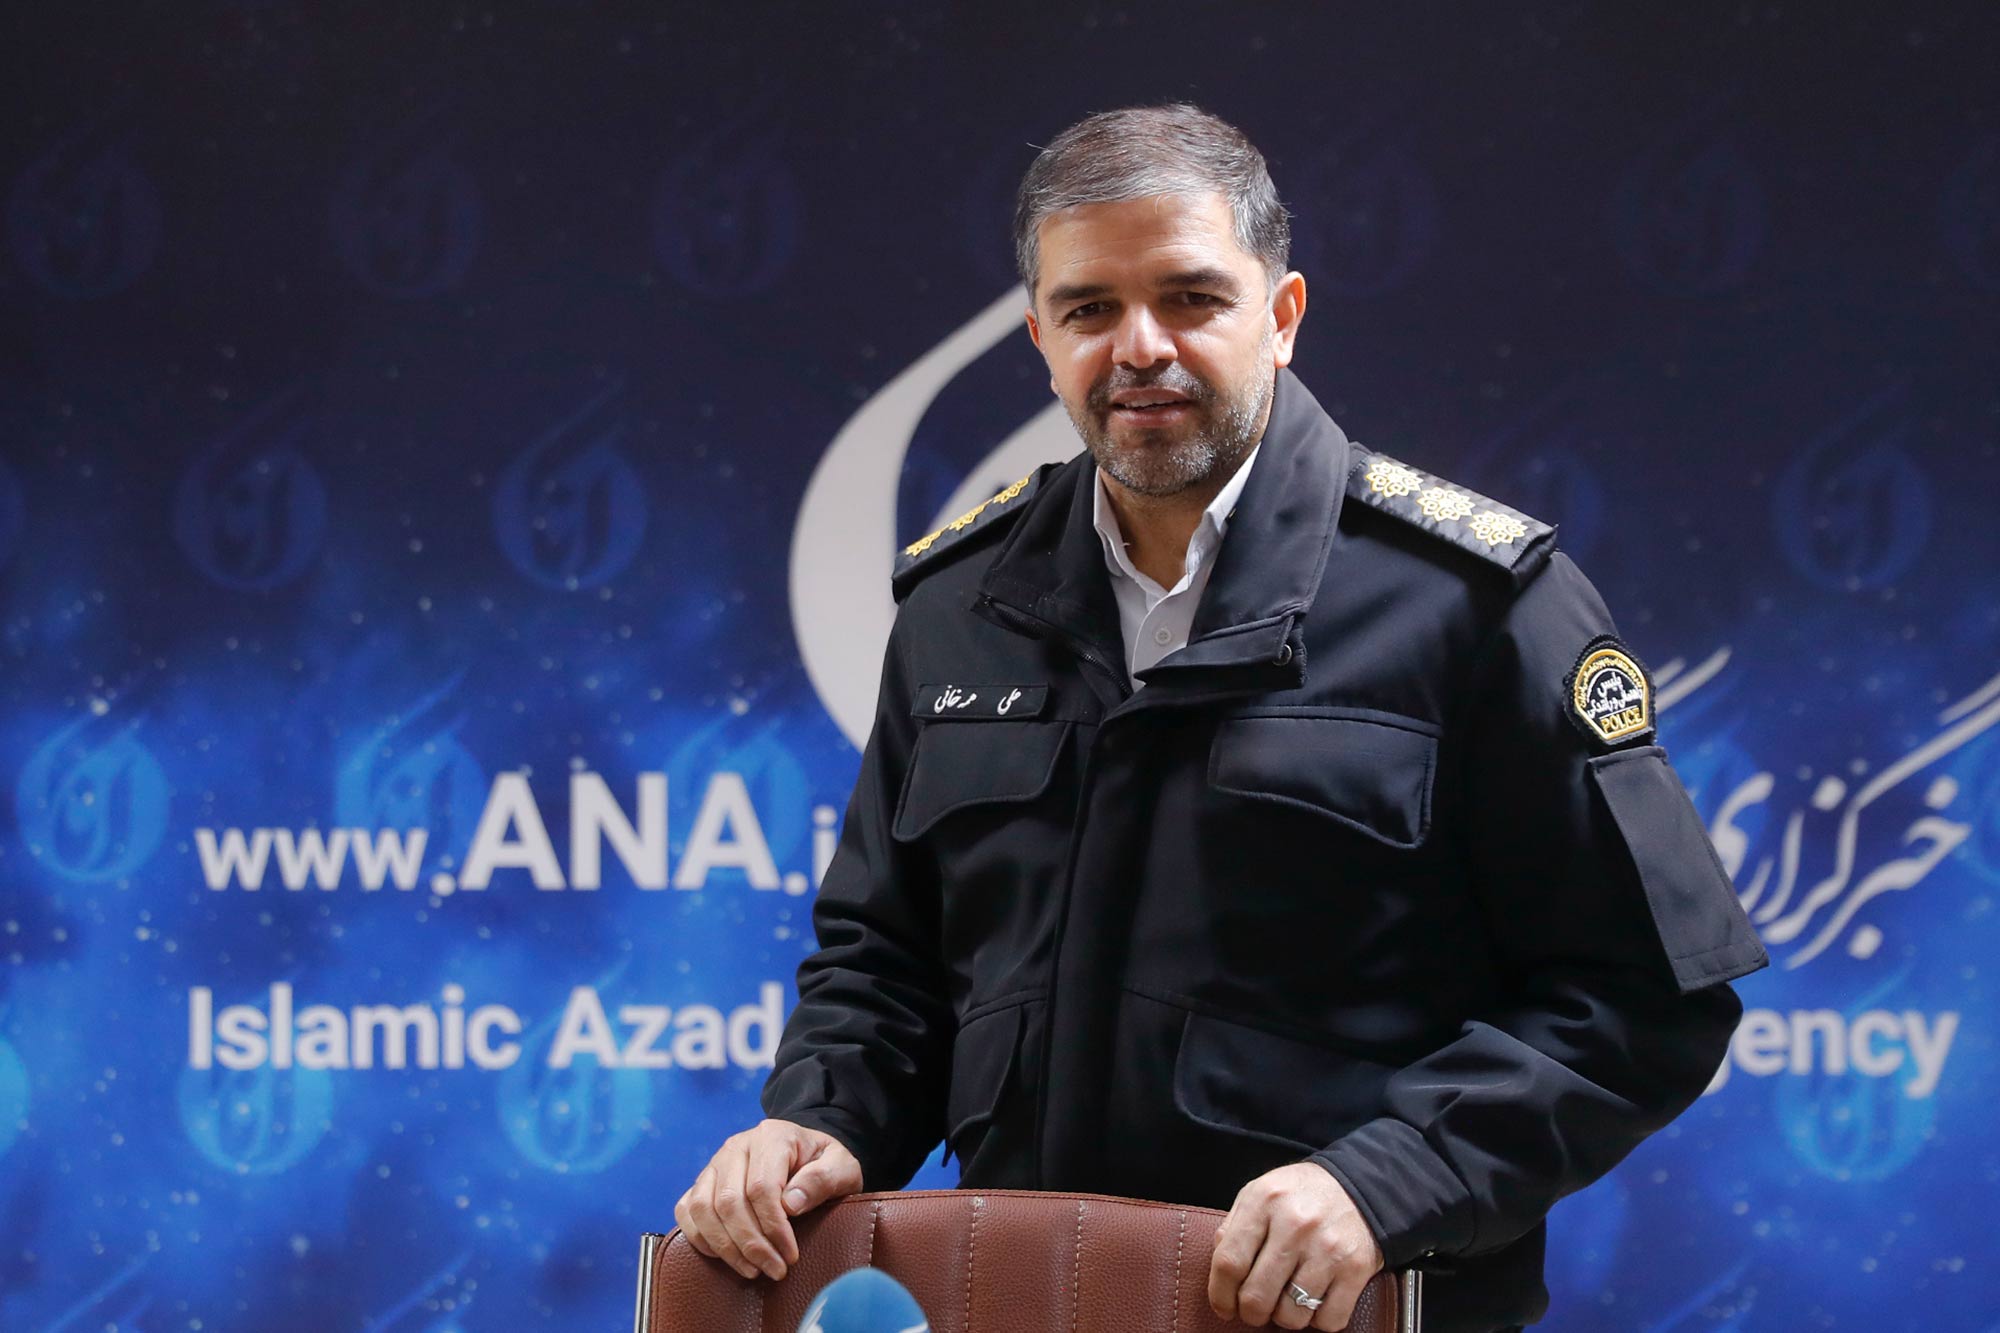 بازدید معاون آموزش پلیس راهور تهران از خبرگزاری آنا